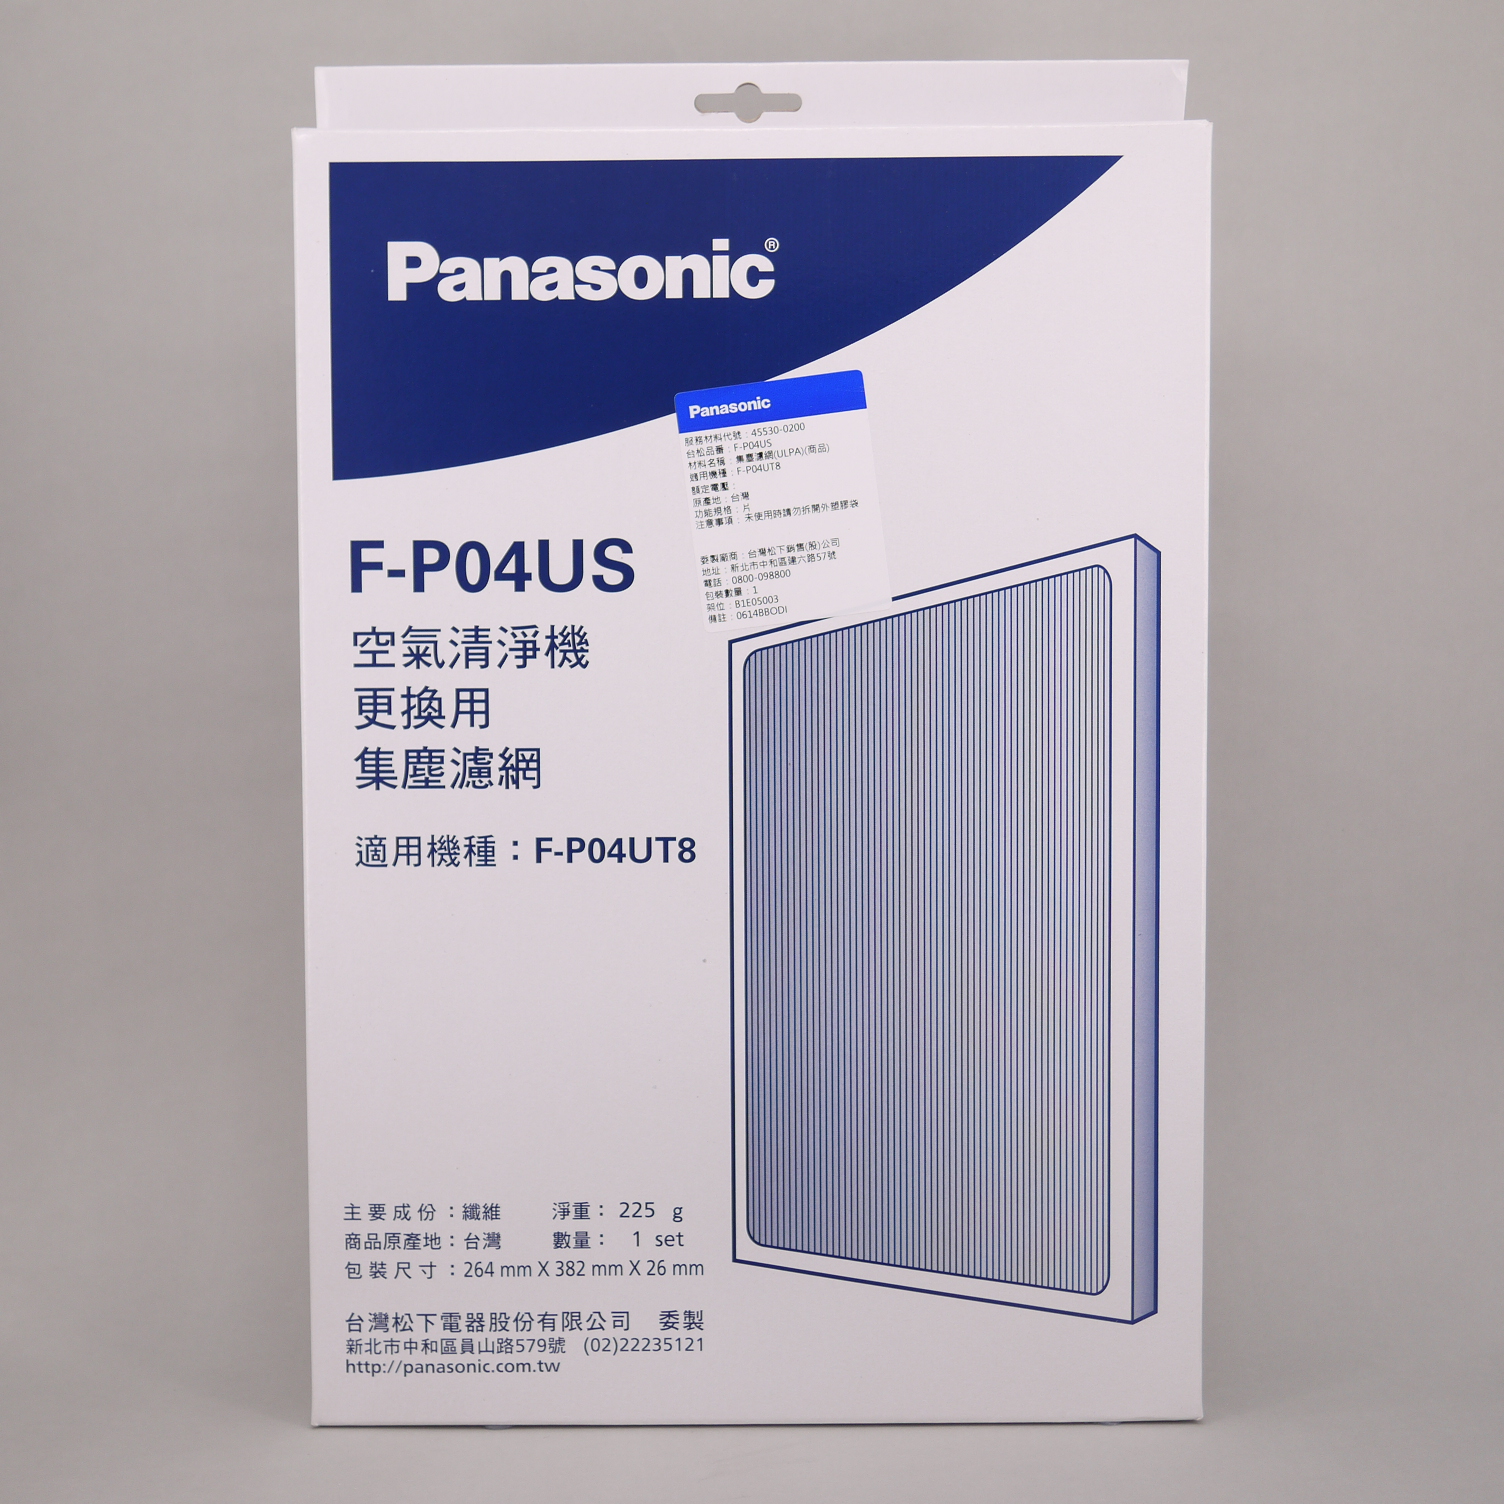 商品列表- Panasonic 台灣松下官方購物商城